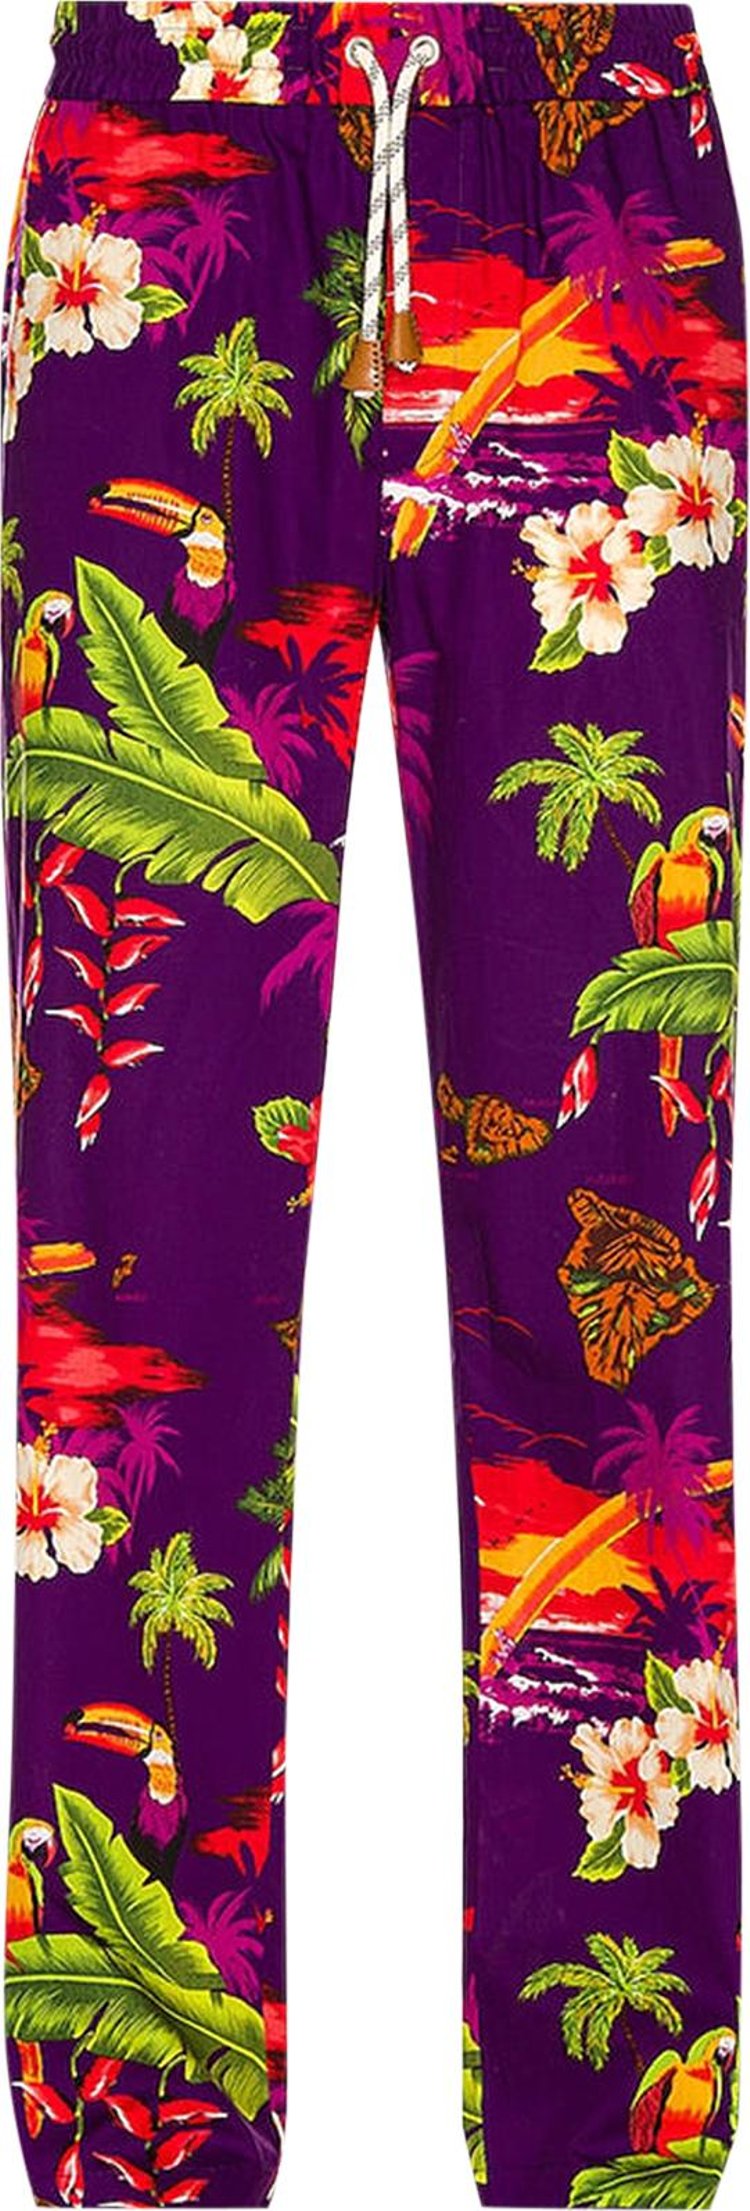 Moncler Genius x Palm Angels Trousers 'Purple/Multicolor'